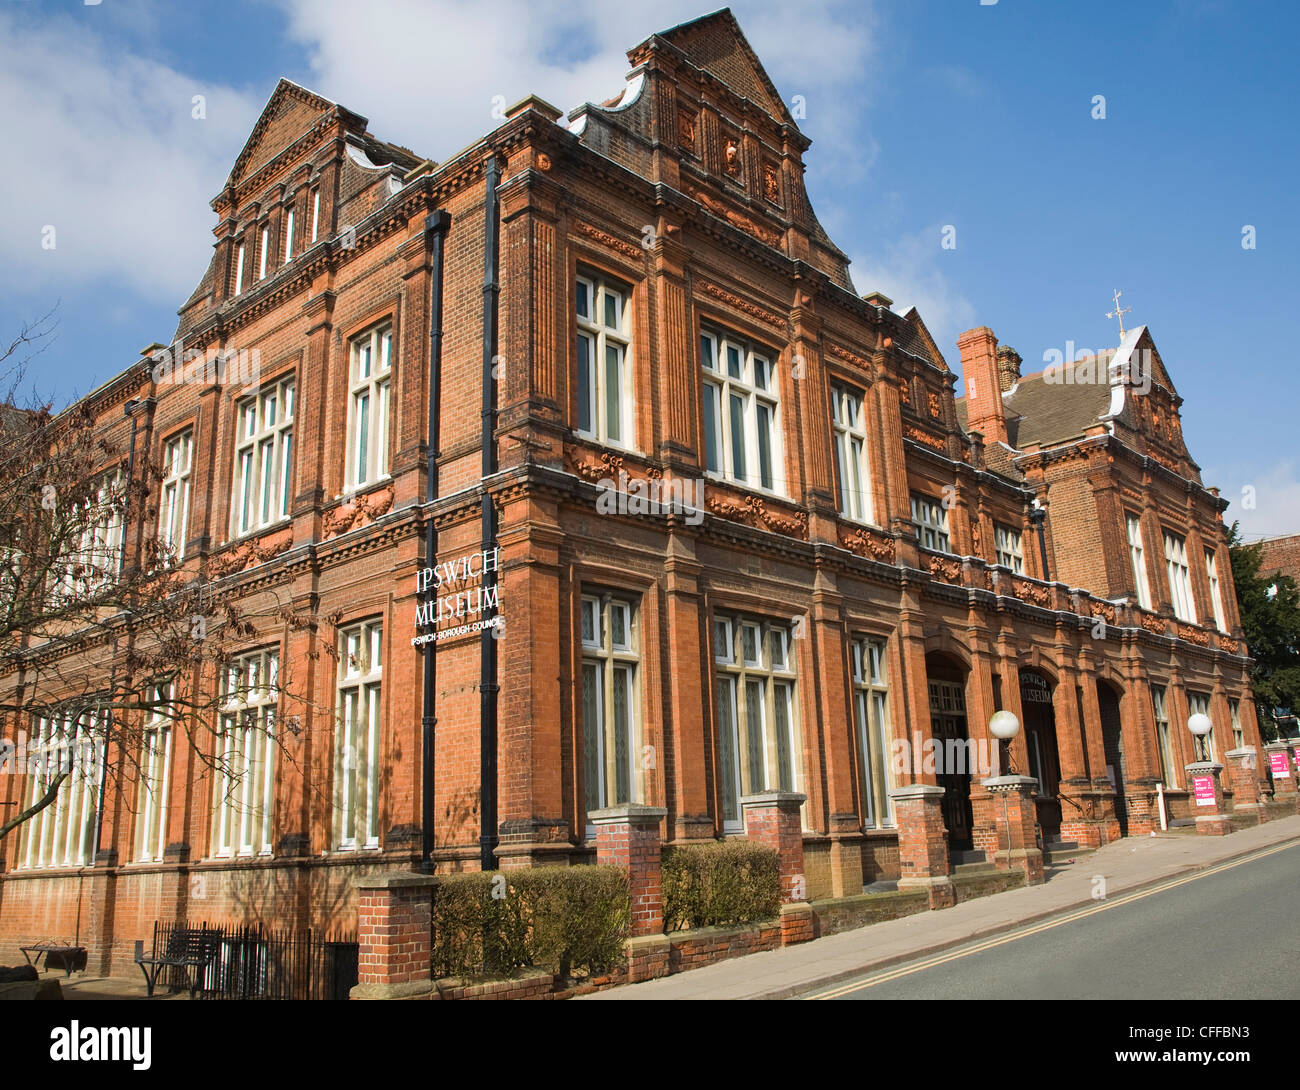 Bâtiment en briques rouges de style victorien construit en 1880, le musée d'Ipswich Ipswich, Suffolk, Angleterre Banque D'Images